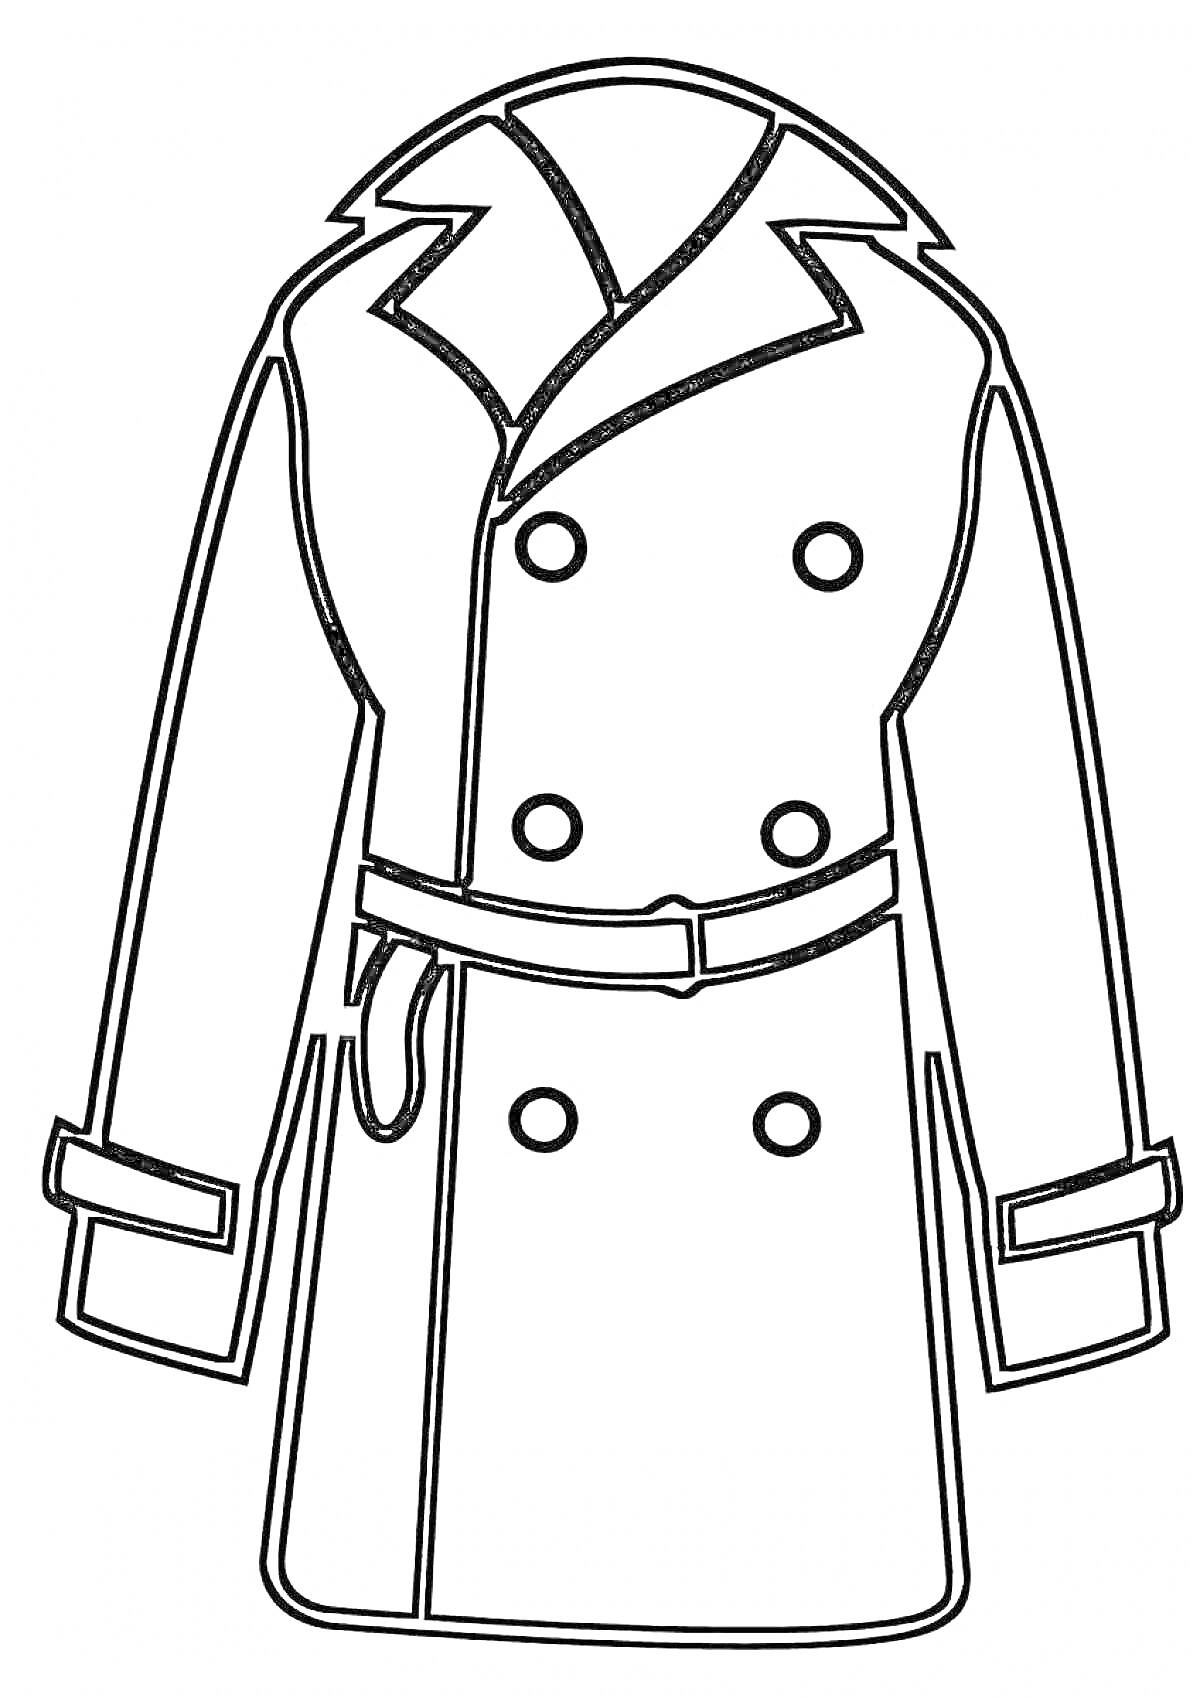 Пальто с воротником, рукавами, поясом и пуговицами